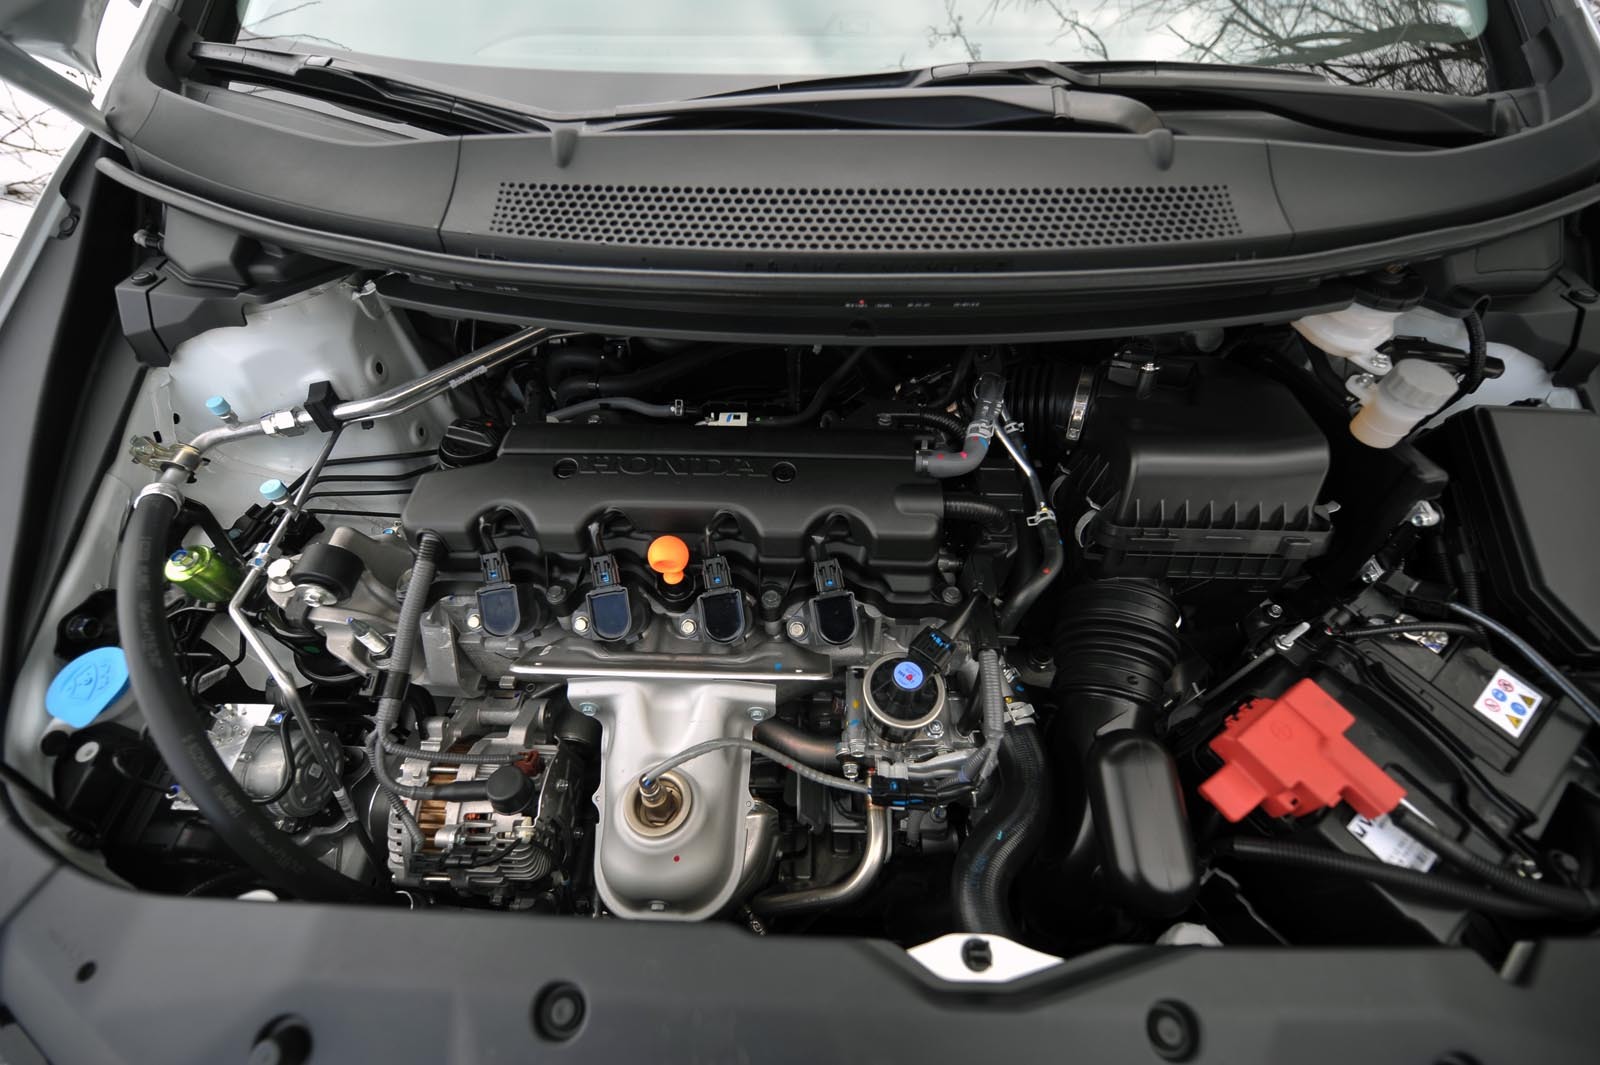 Pe hartie, motorul aspirat de 1,8 litri al lui Honda Civic nu uimeste, In practica, insa...